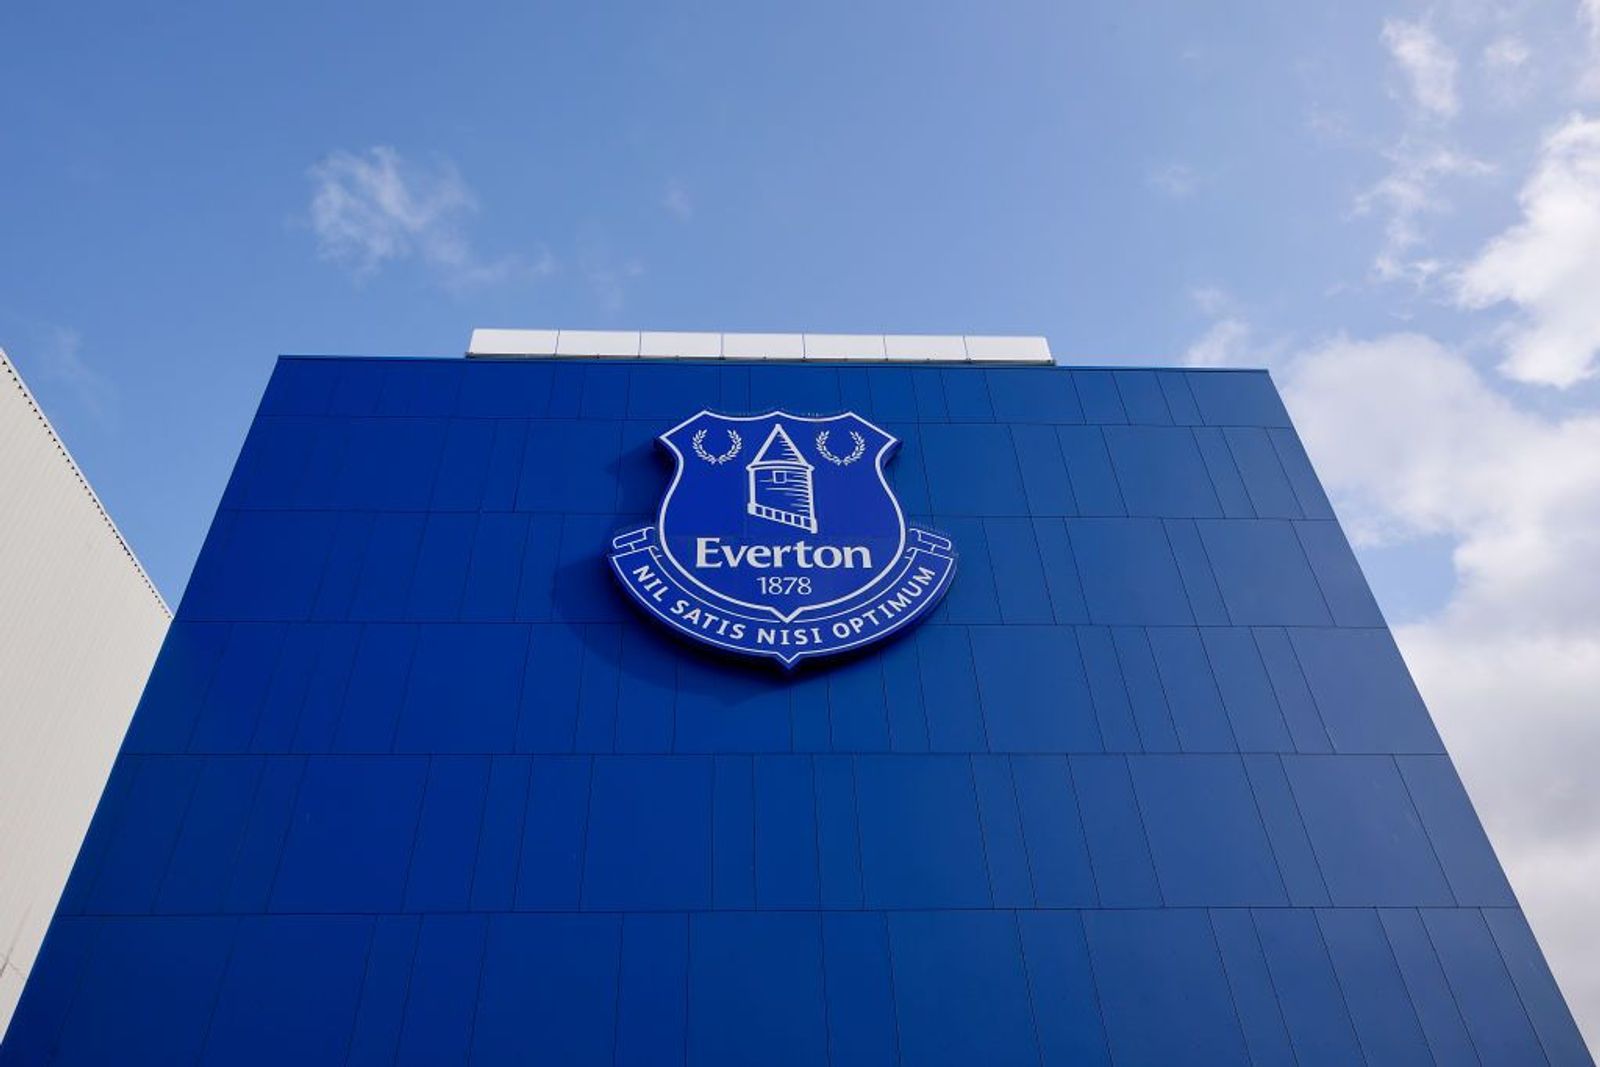 Câu lạc bộ bóng đá Everton – Một câu lạc bộ bóng đá thành công và có nhiều người hâm mộ